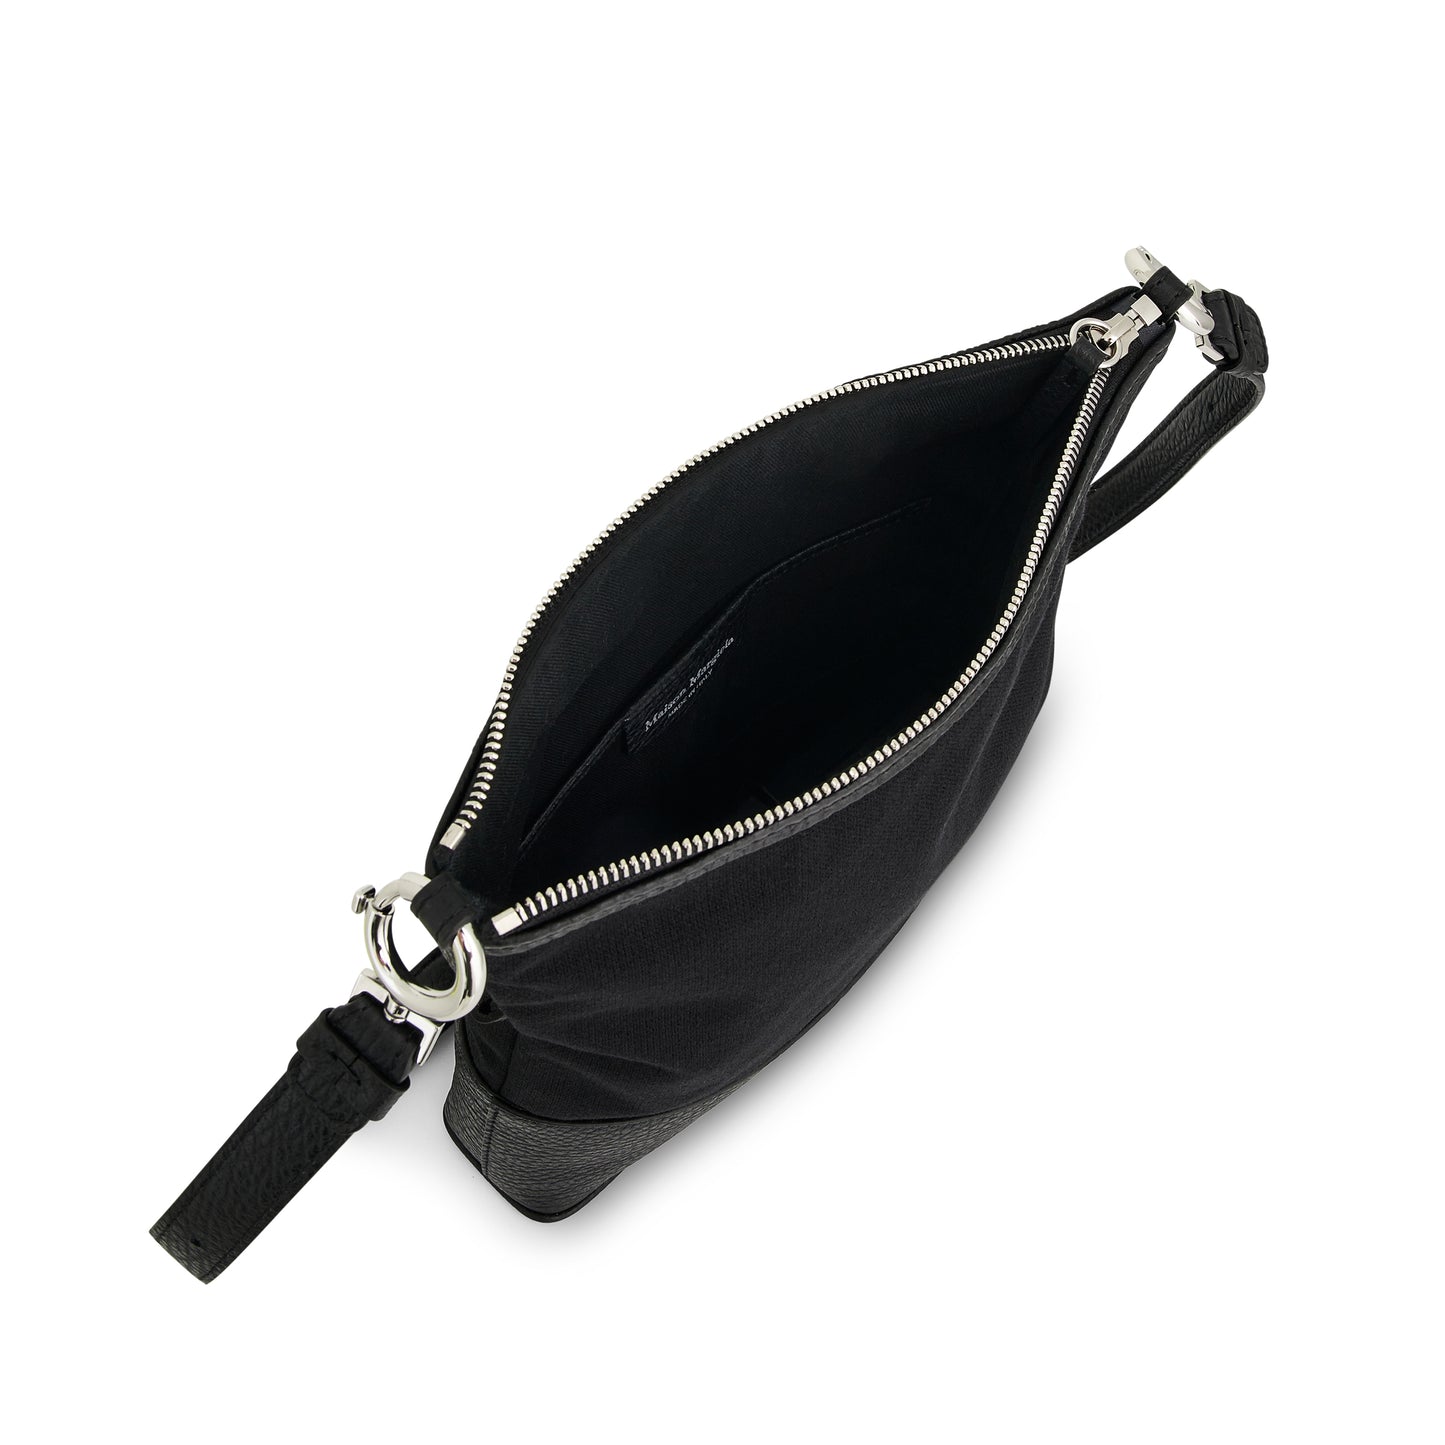 Small 5AC Hobo Bag in Black